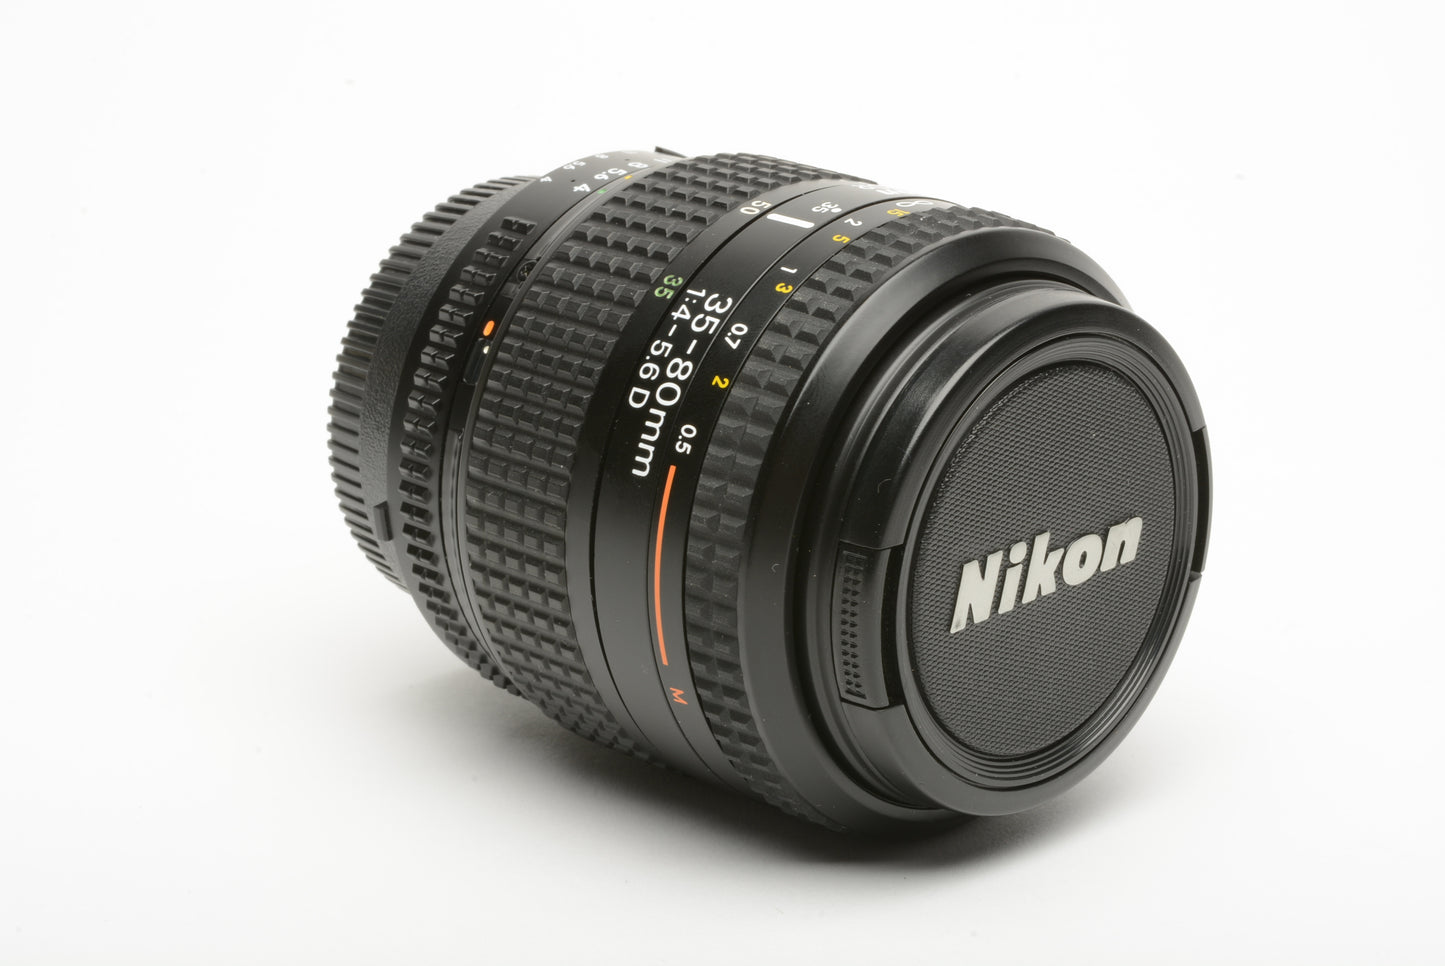 Nikon AF 35-80mm f4-5.6D Macro zoom lens, caps+Instructions, clean